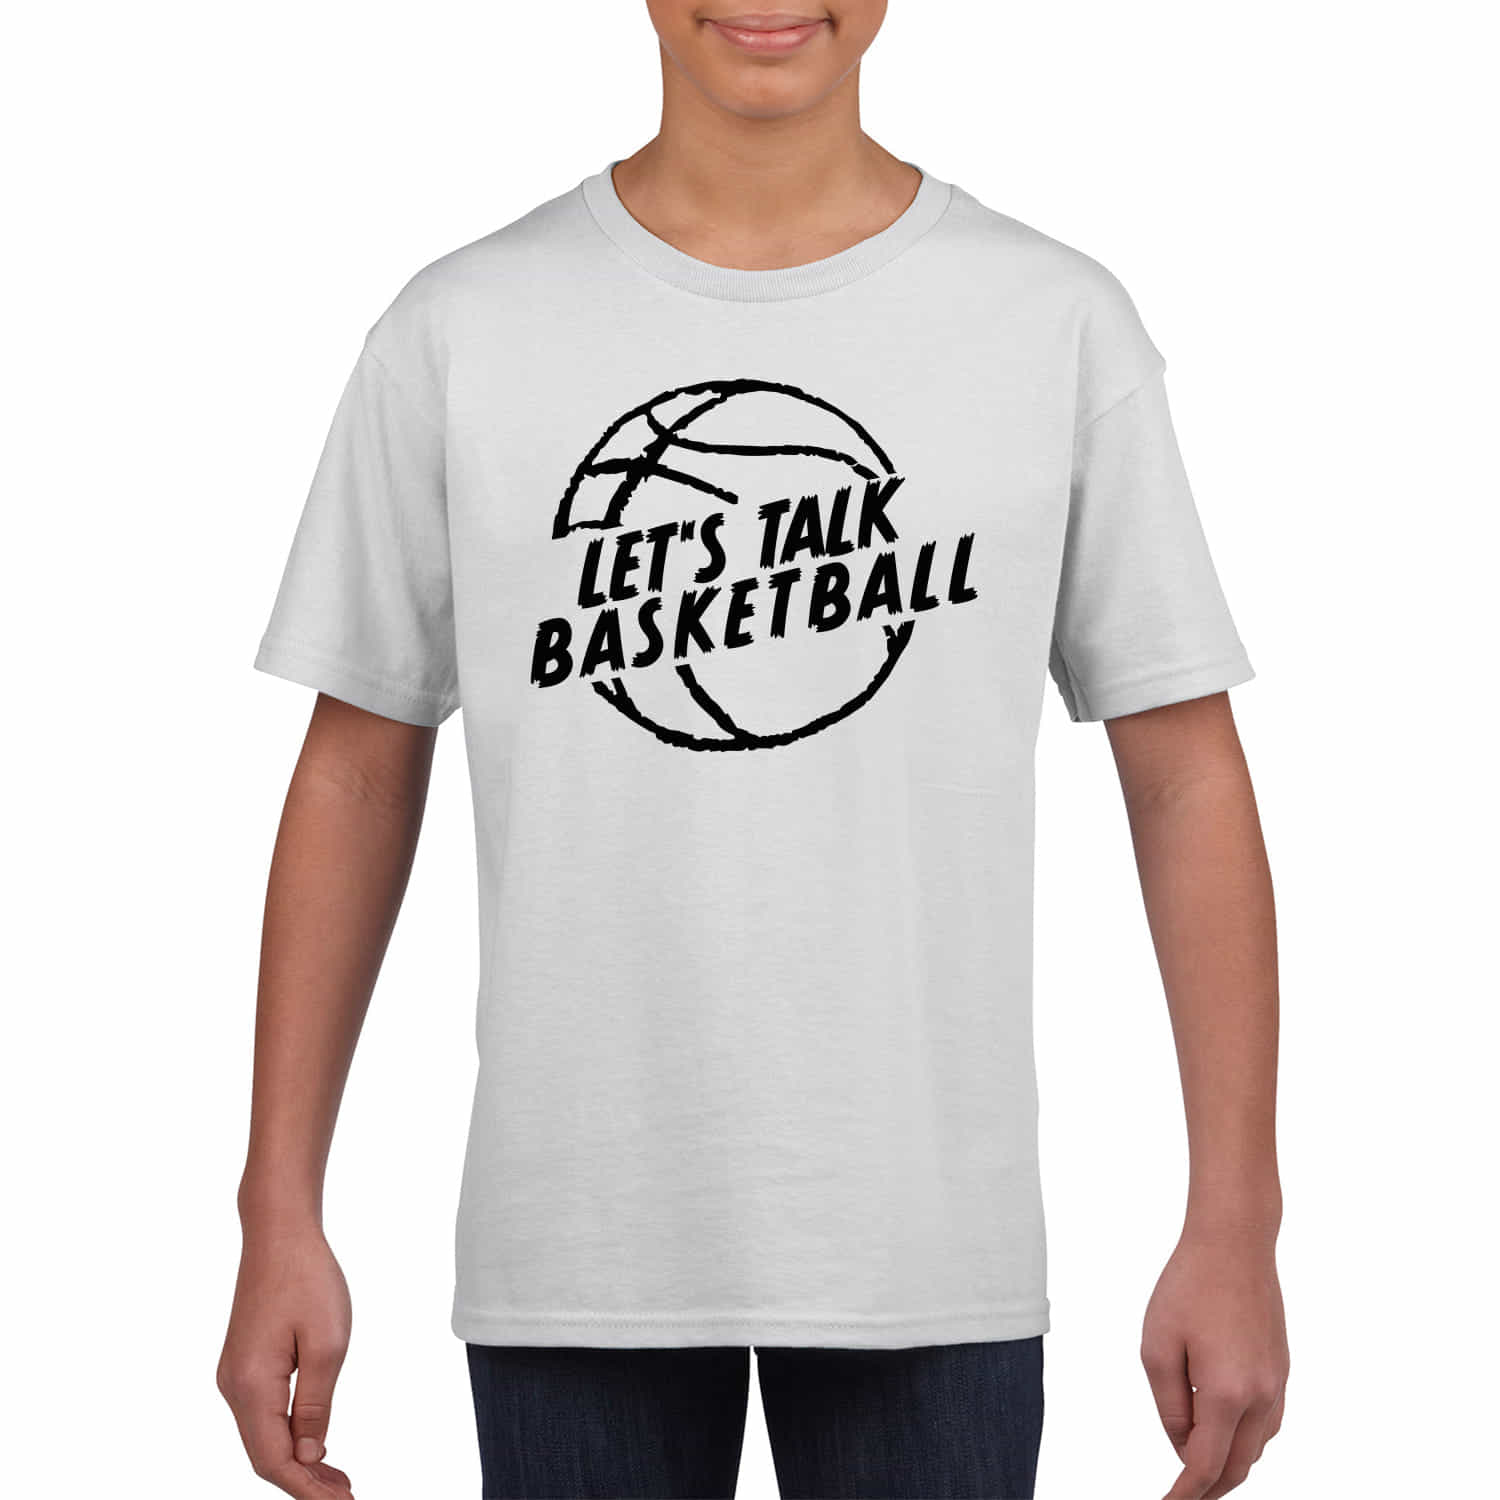 Kinder T-Shirt "Let's talk Basketball"